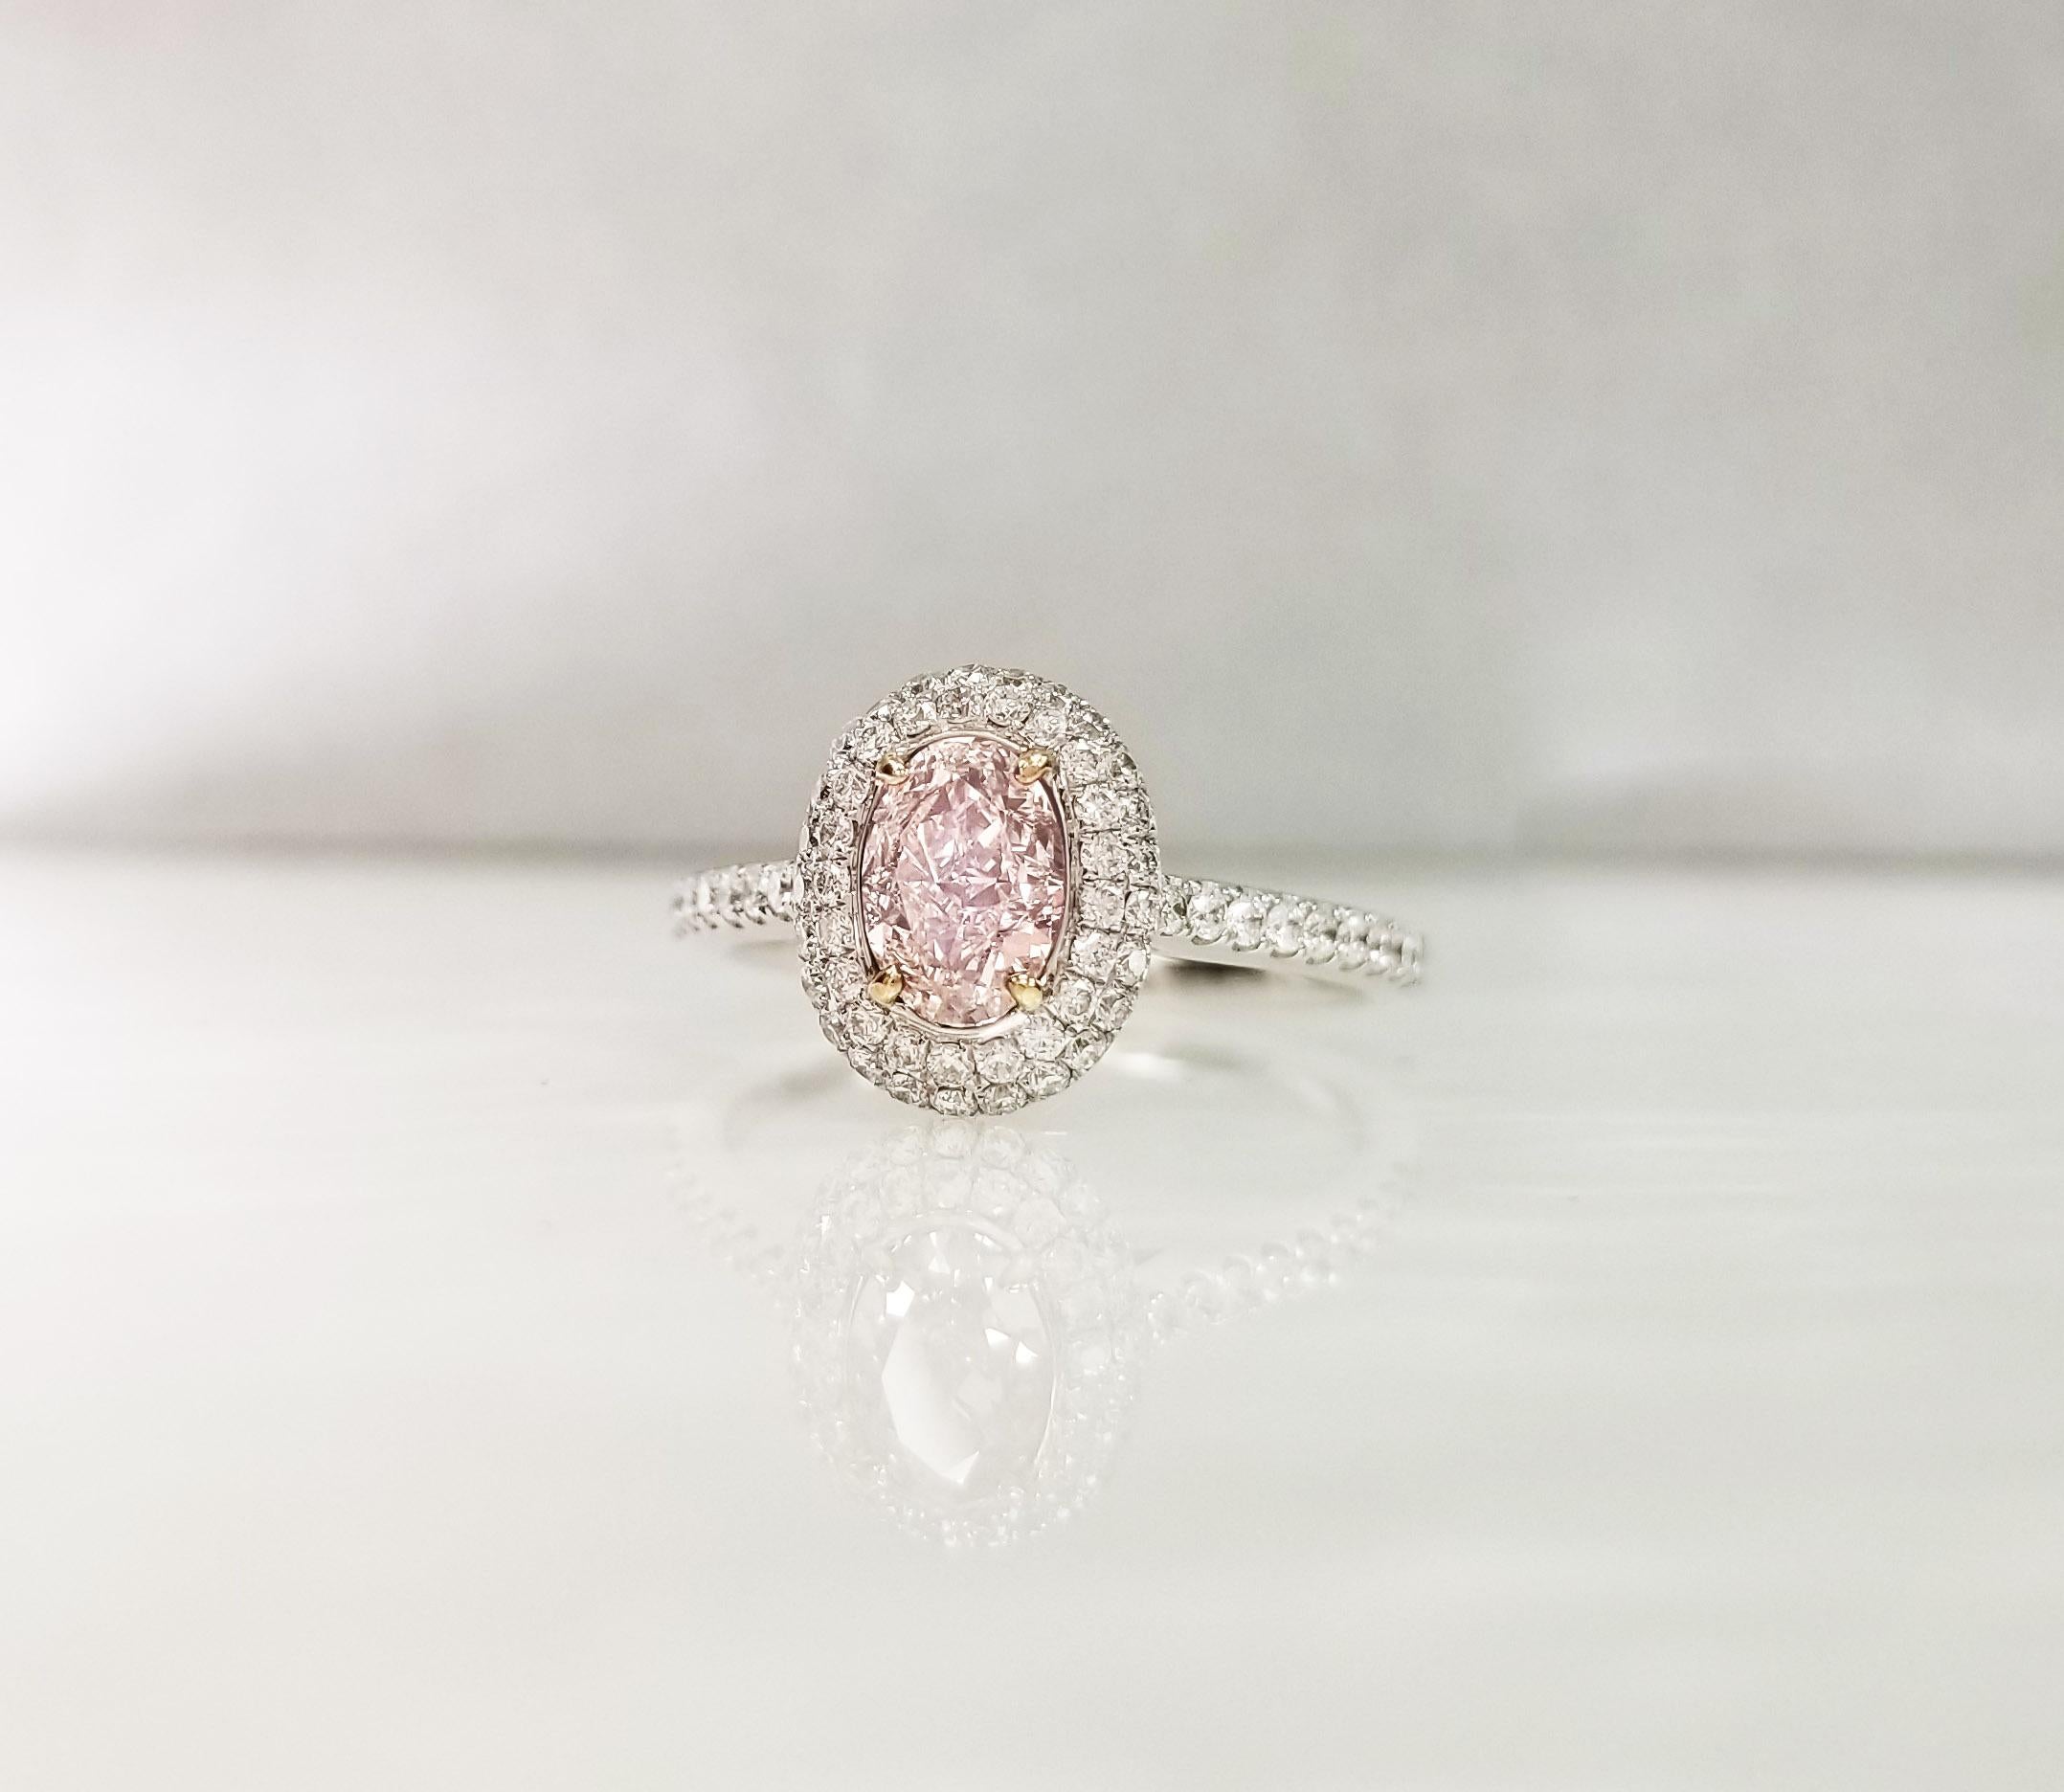 GIA-zertifiziert 0,82 ct Oval Pink Diamond Engagement Halo Ring auf 18k Weißgold Band. Der zentrale rosafarbene Diamant mit der Reinheit VVS1 ist von zwei Reihen runder weißer Diamanten umgeben, die einen Halo-Effekt erzeugen. Die Größe des Rings